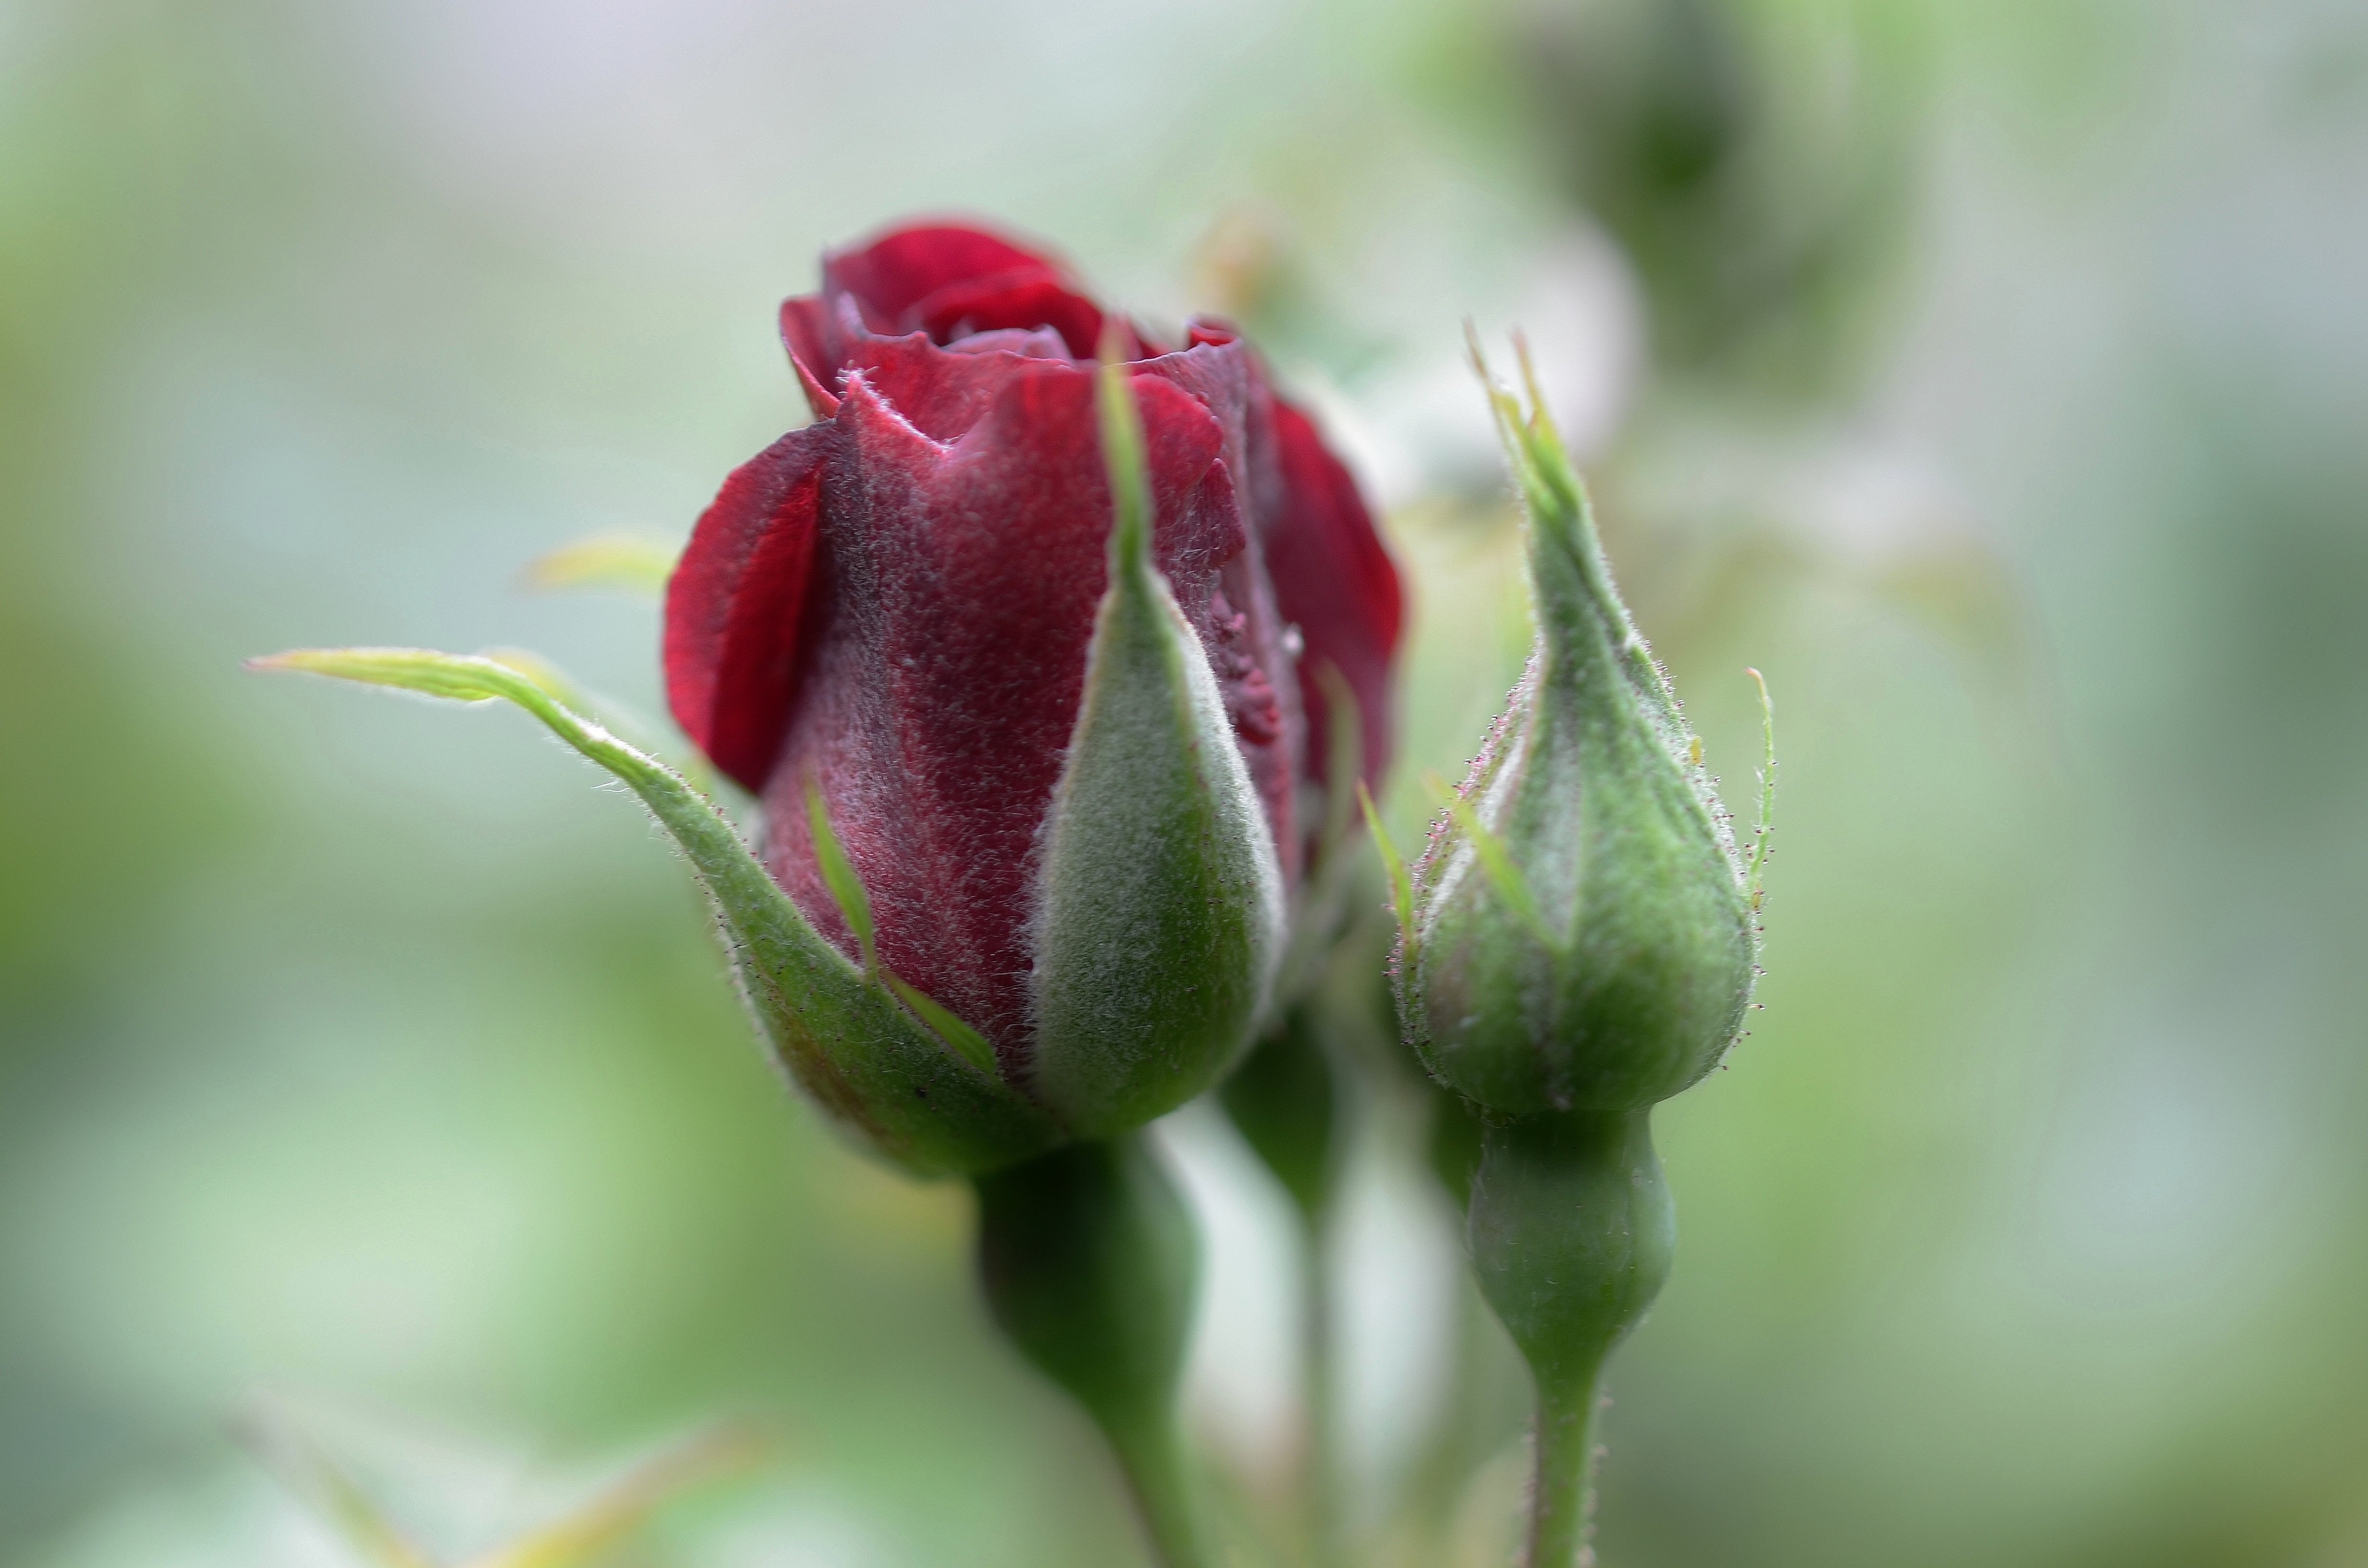 Красные бутоны 15 дата выхода. Чашелистик розы. Бутон цветка. Бутон розы. Красивые бутоны роз.